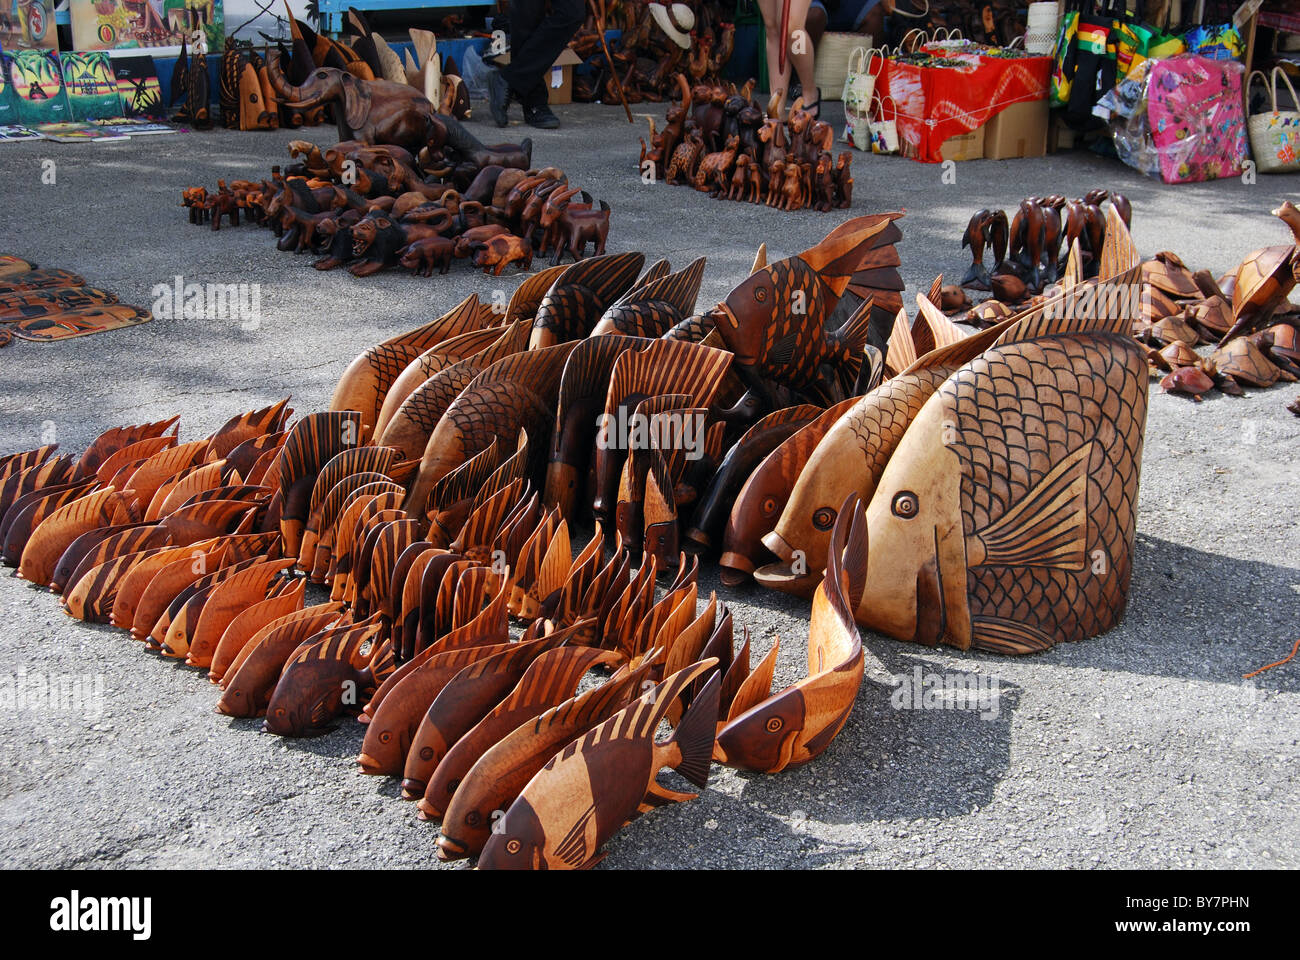 In legno intagliato negozio di souvenir in vendita in banchina, Montego Bay, Giamaica, dei Caraibi. Foto Stock